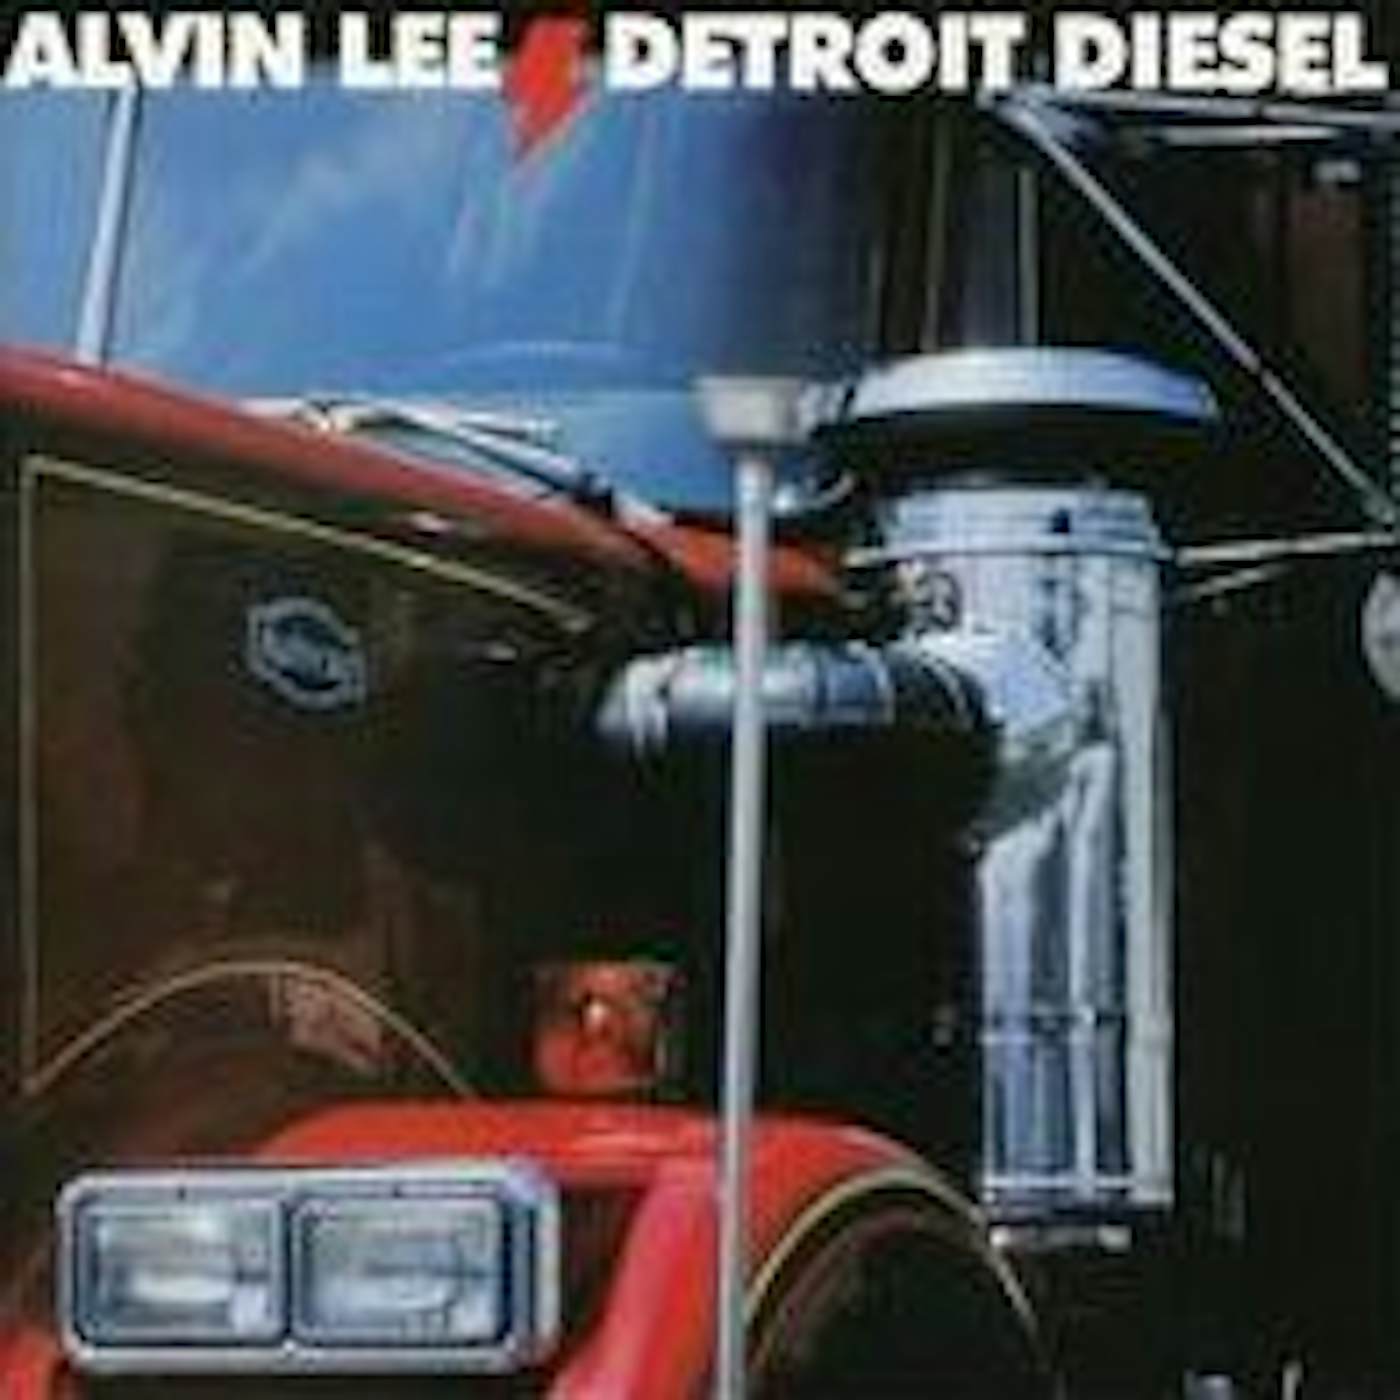 Alvin Lee DETROIT DIESEL CD